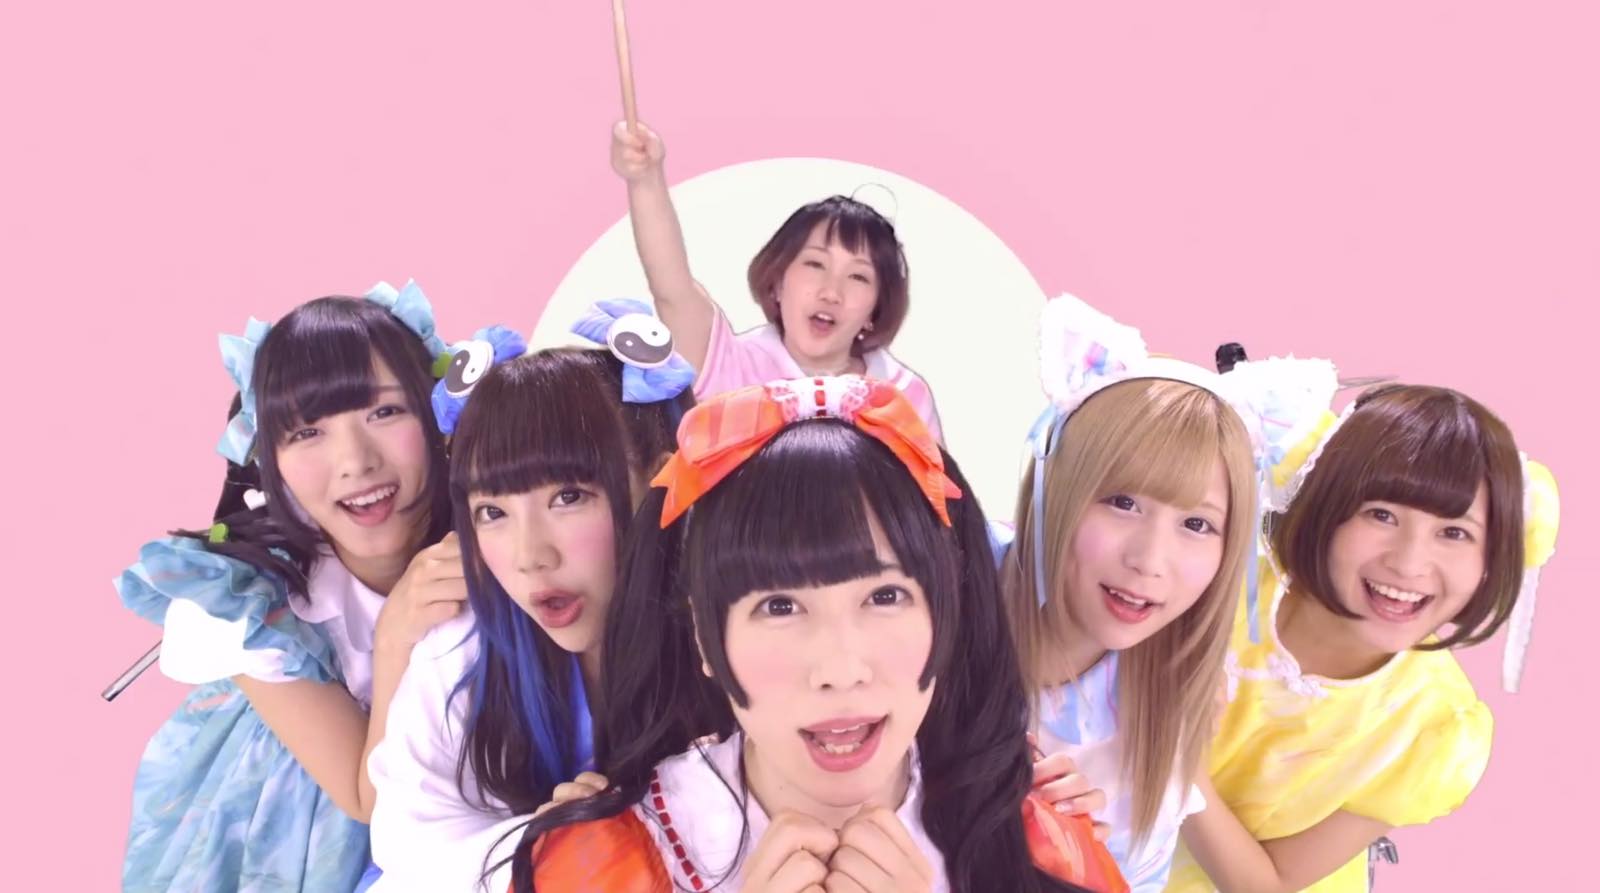 Bandjanaimon! Wants to Make You Smile With Their Colorful and Poppy MV for “Kimi no Egao de Sekai ga Yabai”!